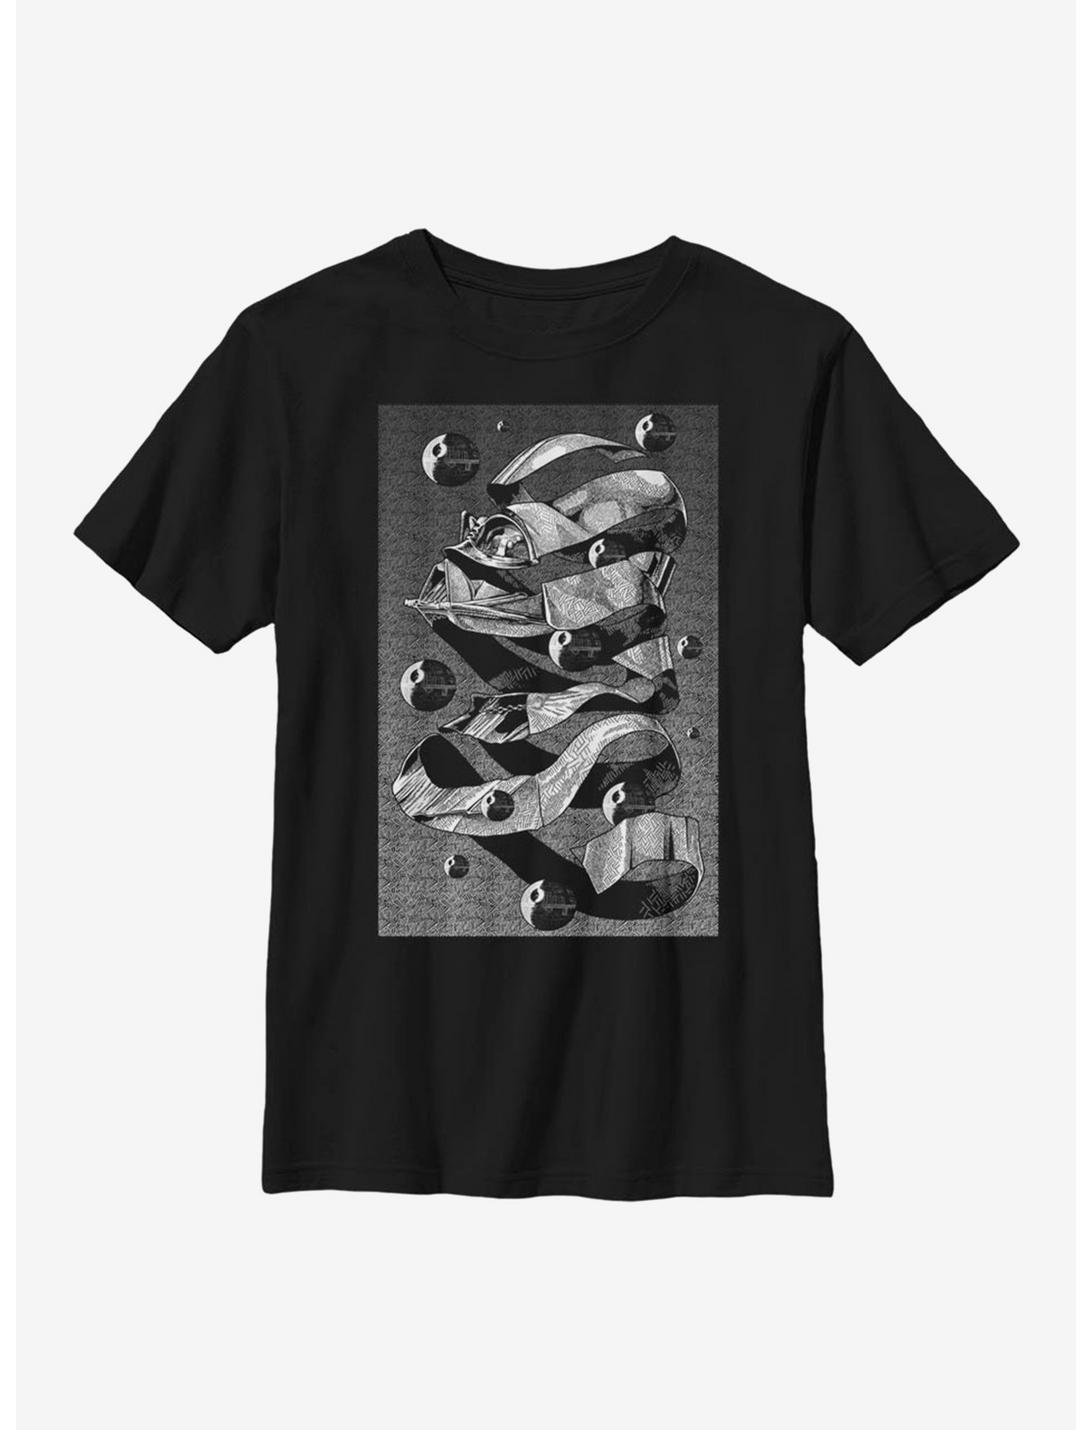 Star Wars Abstract Vader Youth T-Shirt, BLACK, hi-res